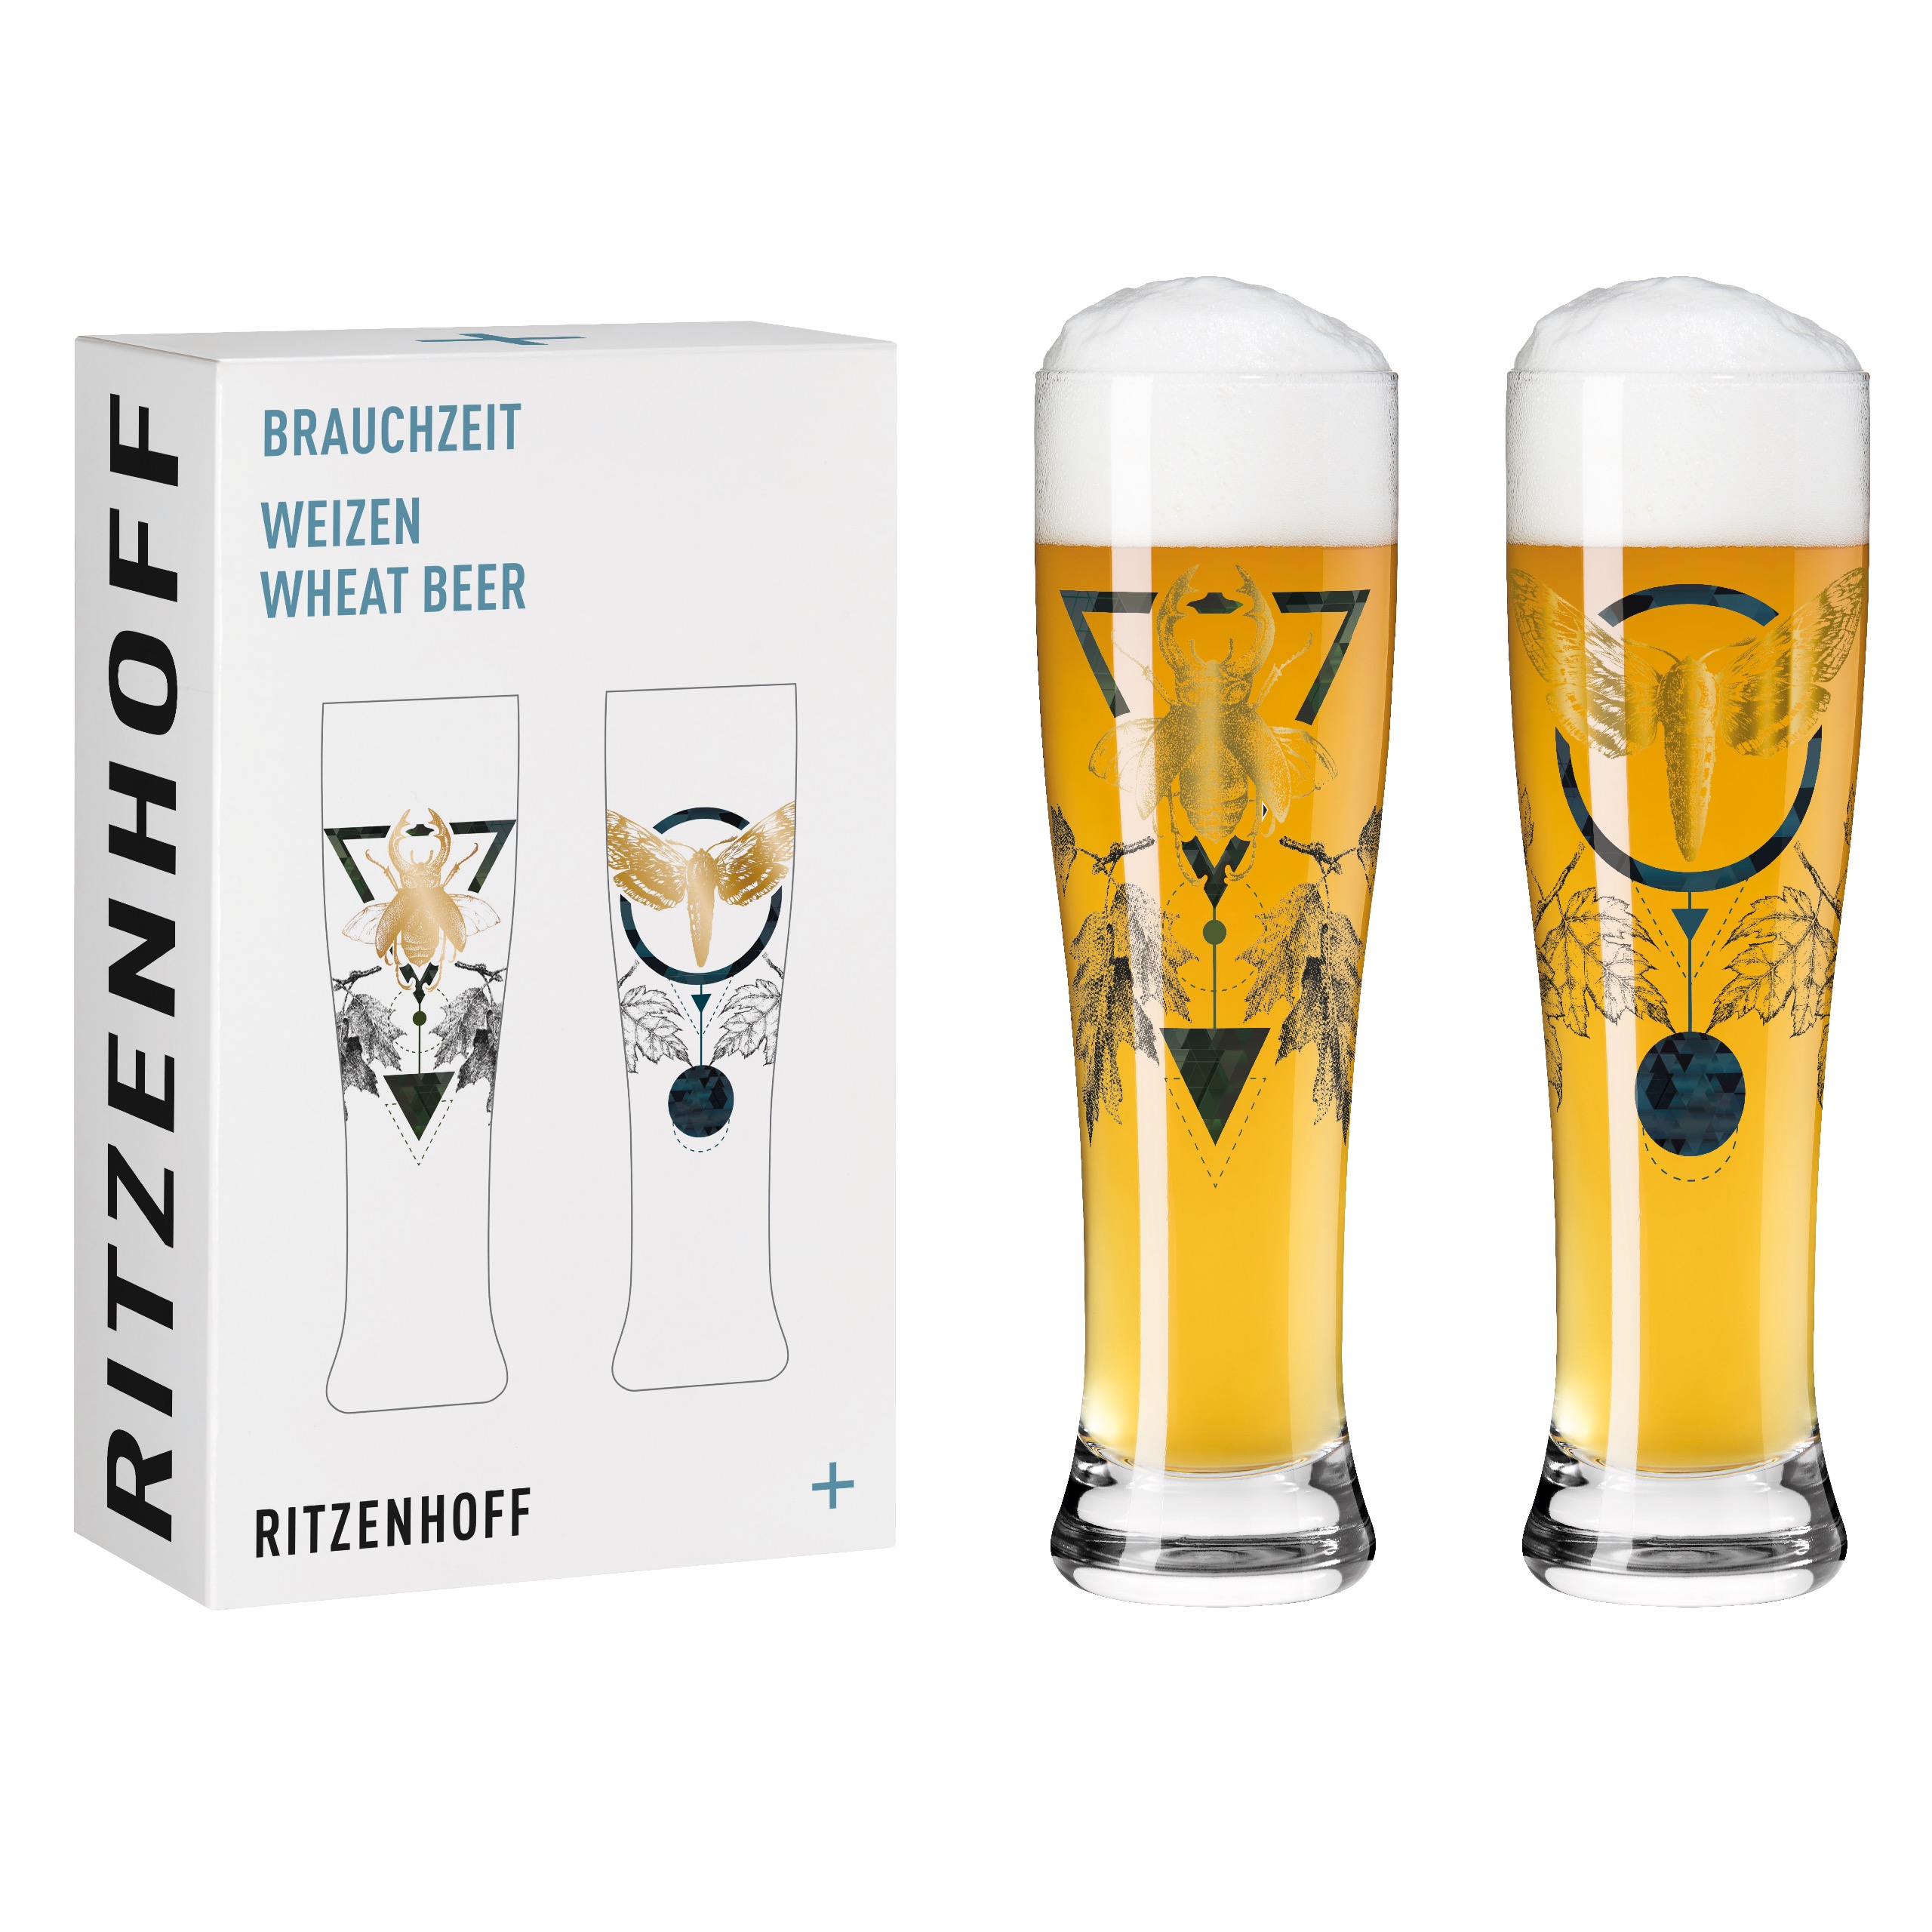 RITZENHOFF - Brachzeit Weizen 2er #5 #6 R. Rosenkranz F21